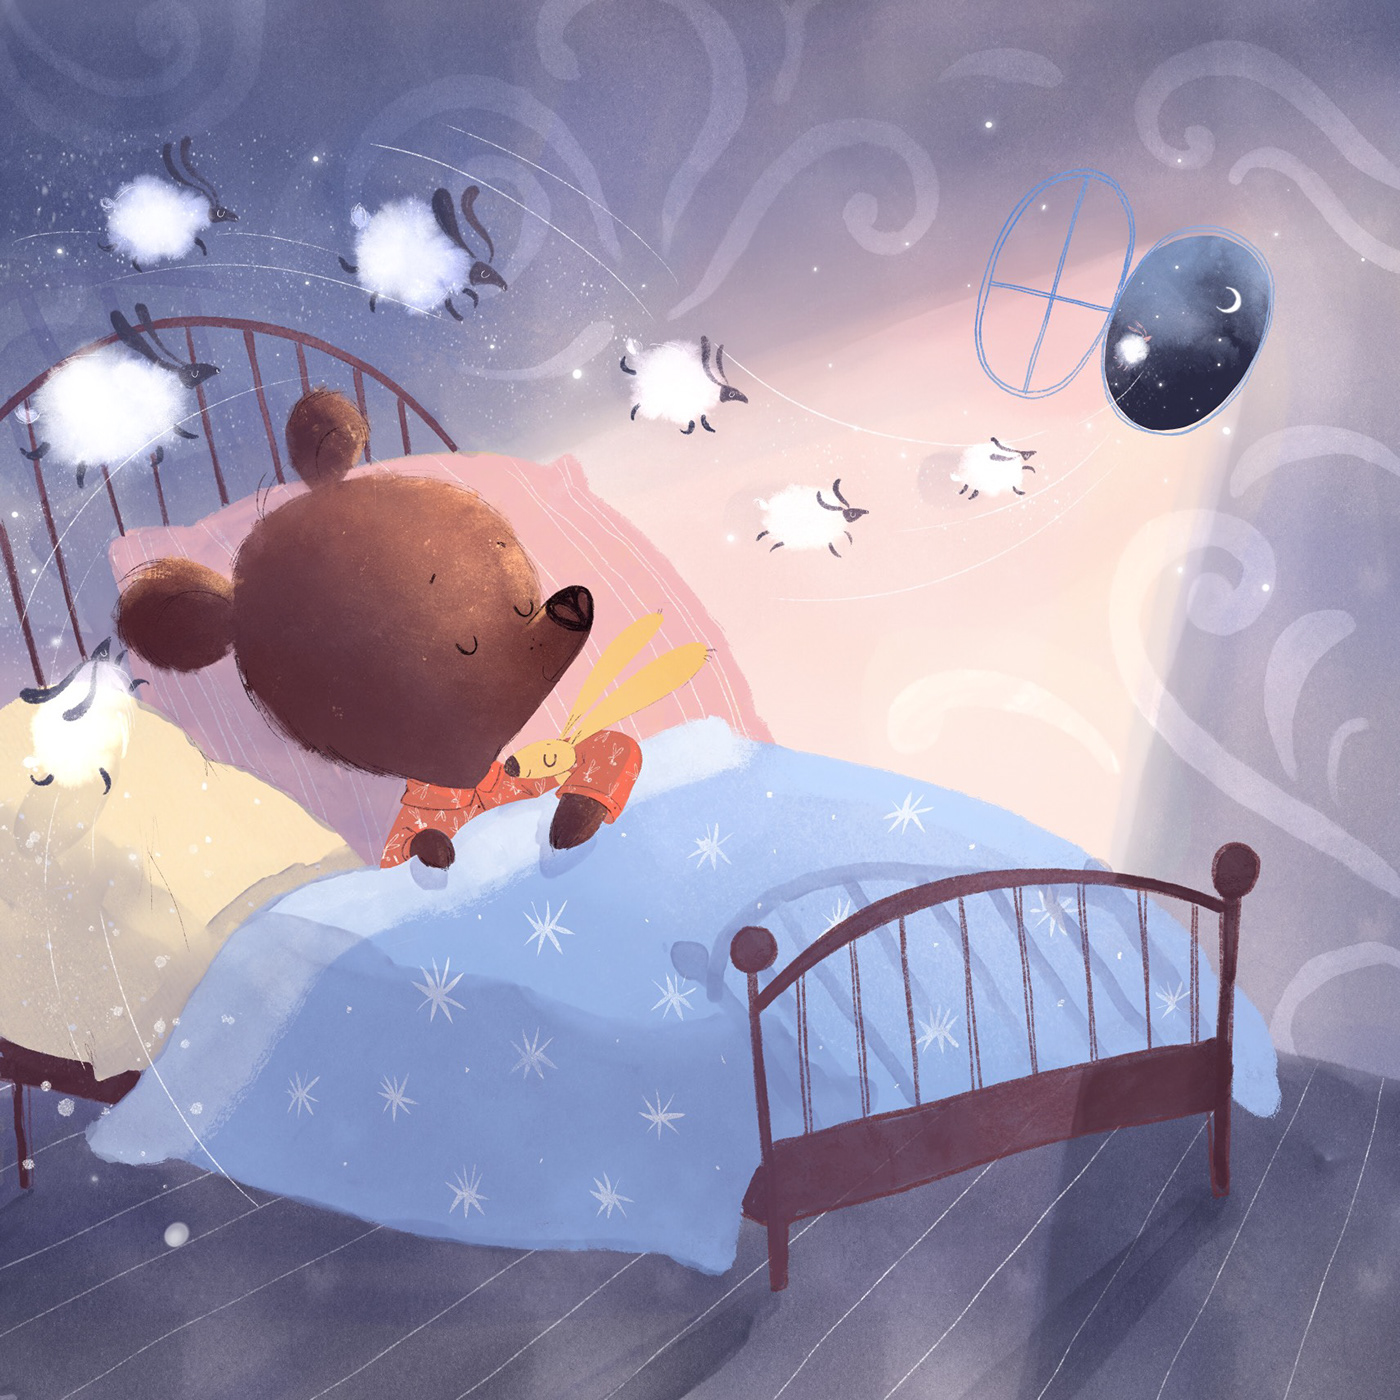 animals bear Character design  children illustration Mobile Application night детская иллюстрация медведь мобильное приложение ночь